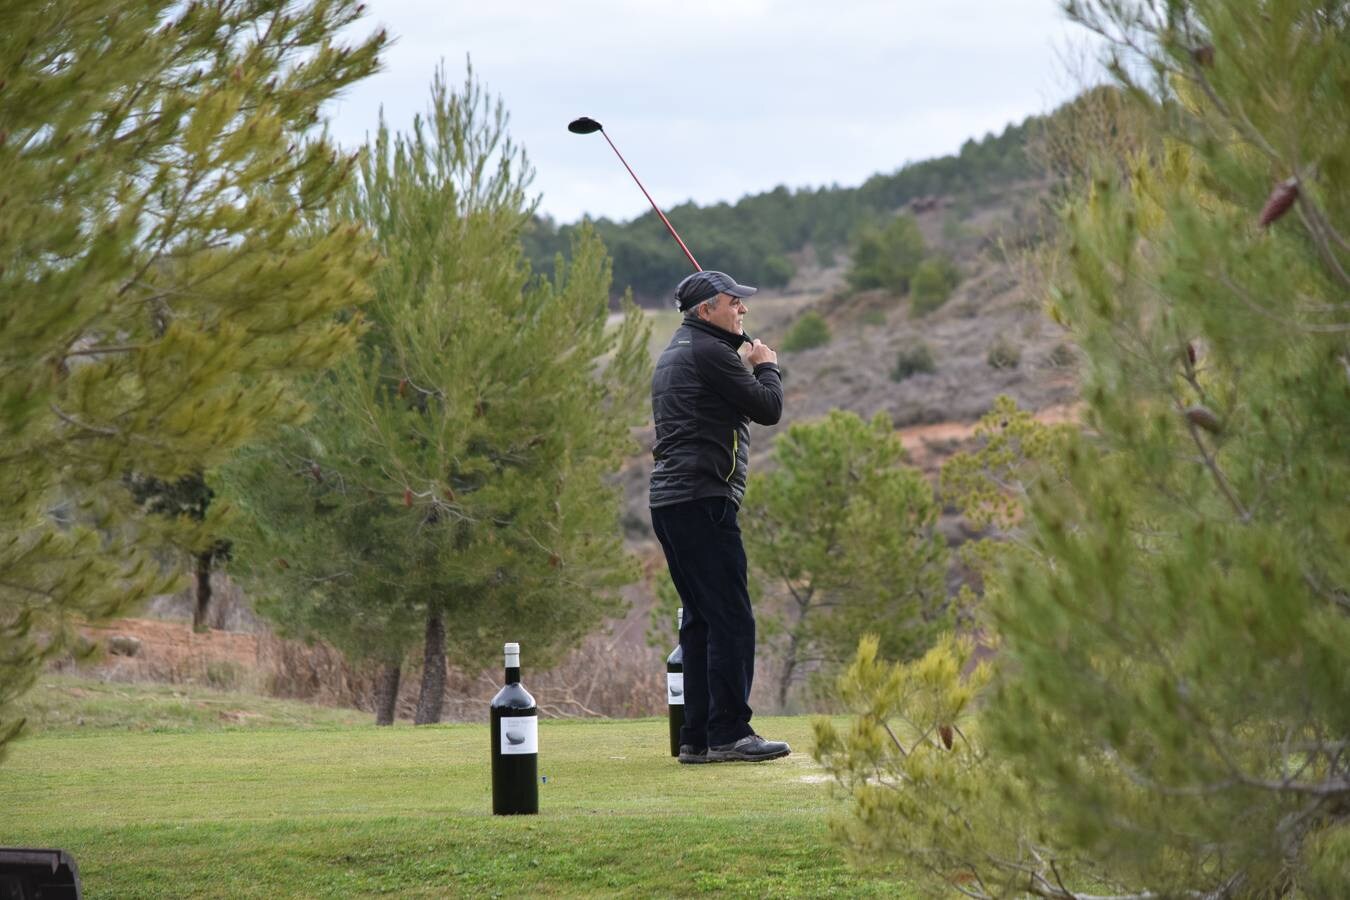 Los jugadores disfrutaron de un gran día en el egundo torneo de la Liga de Golf y Vino organizada por lomejordelvinoderioja.